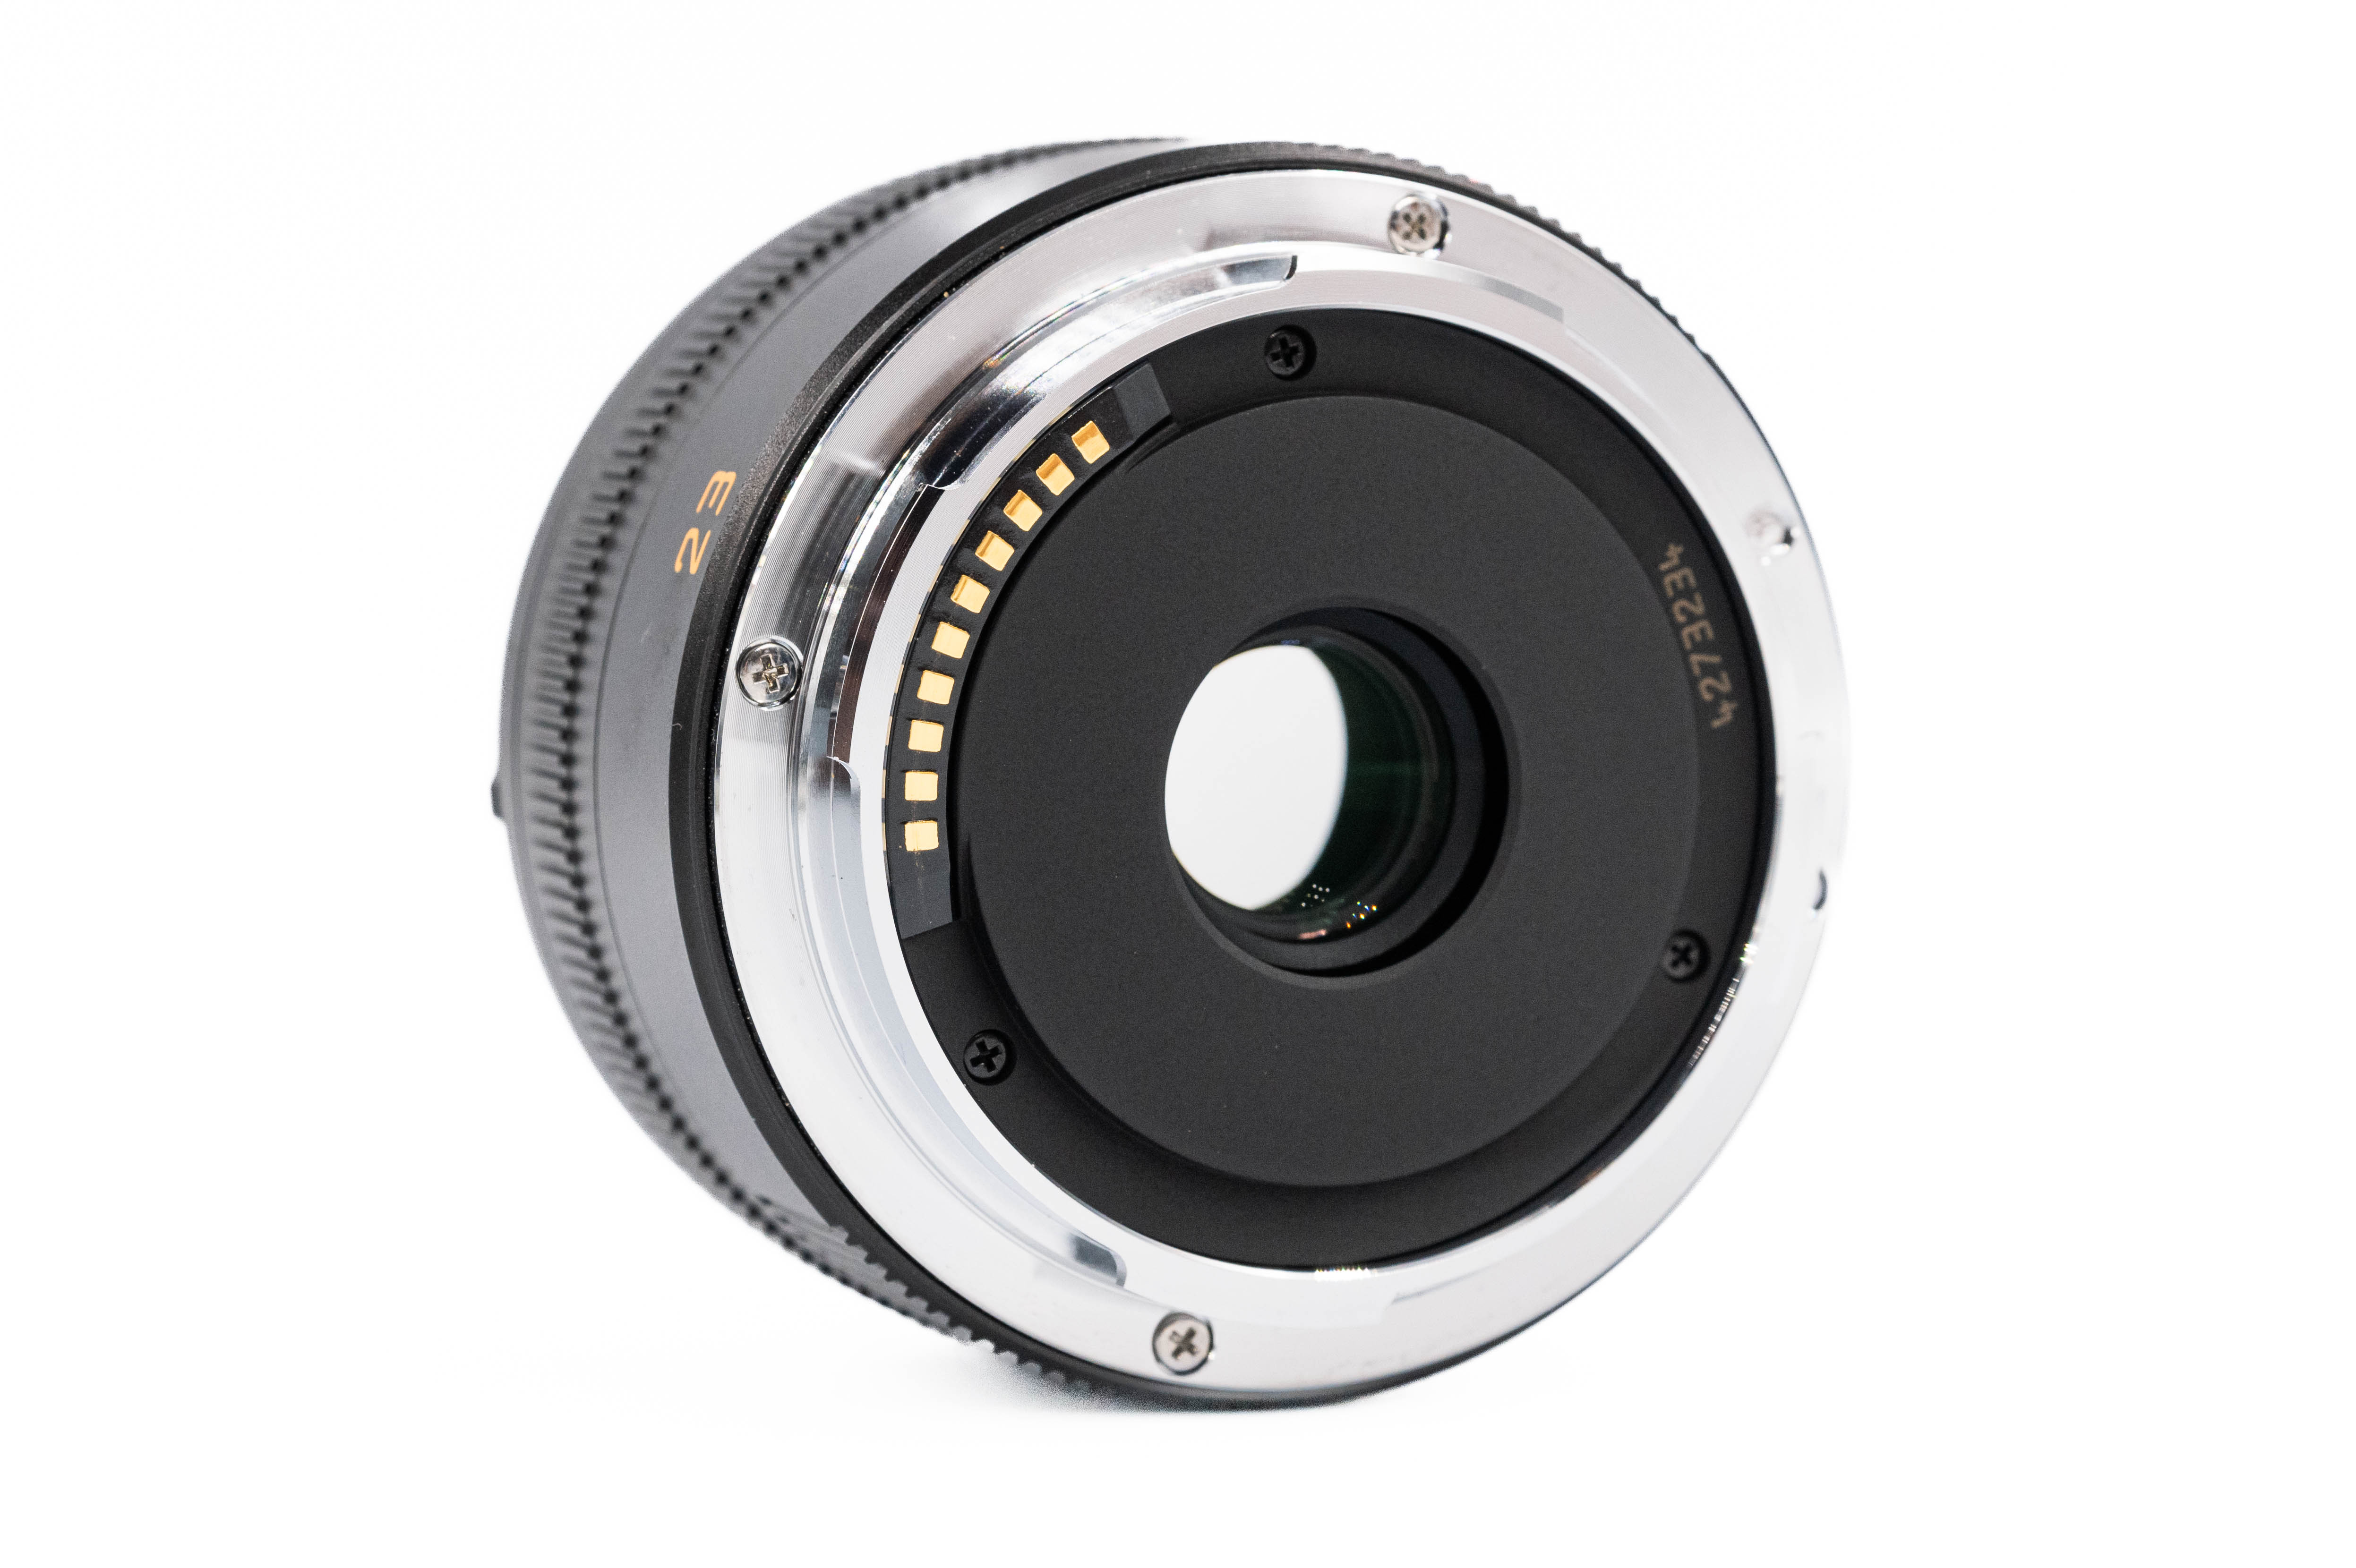 Leica Summicron-TL 23mm f/2 11081